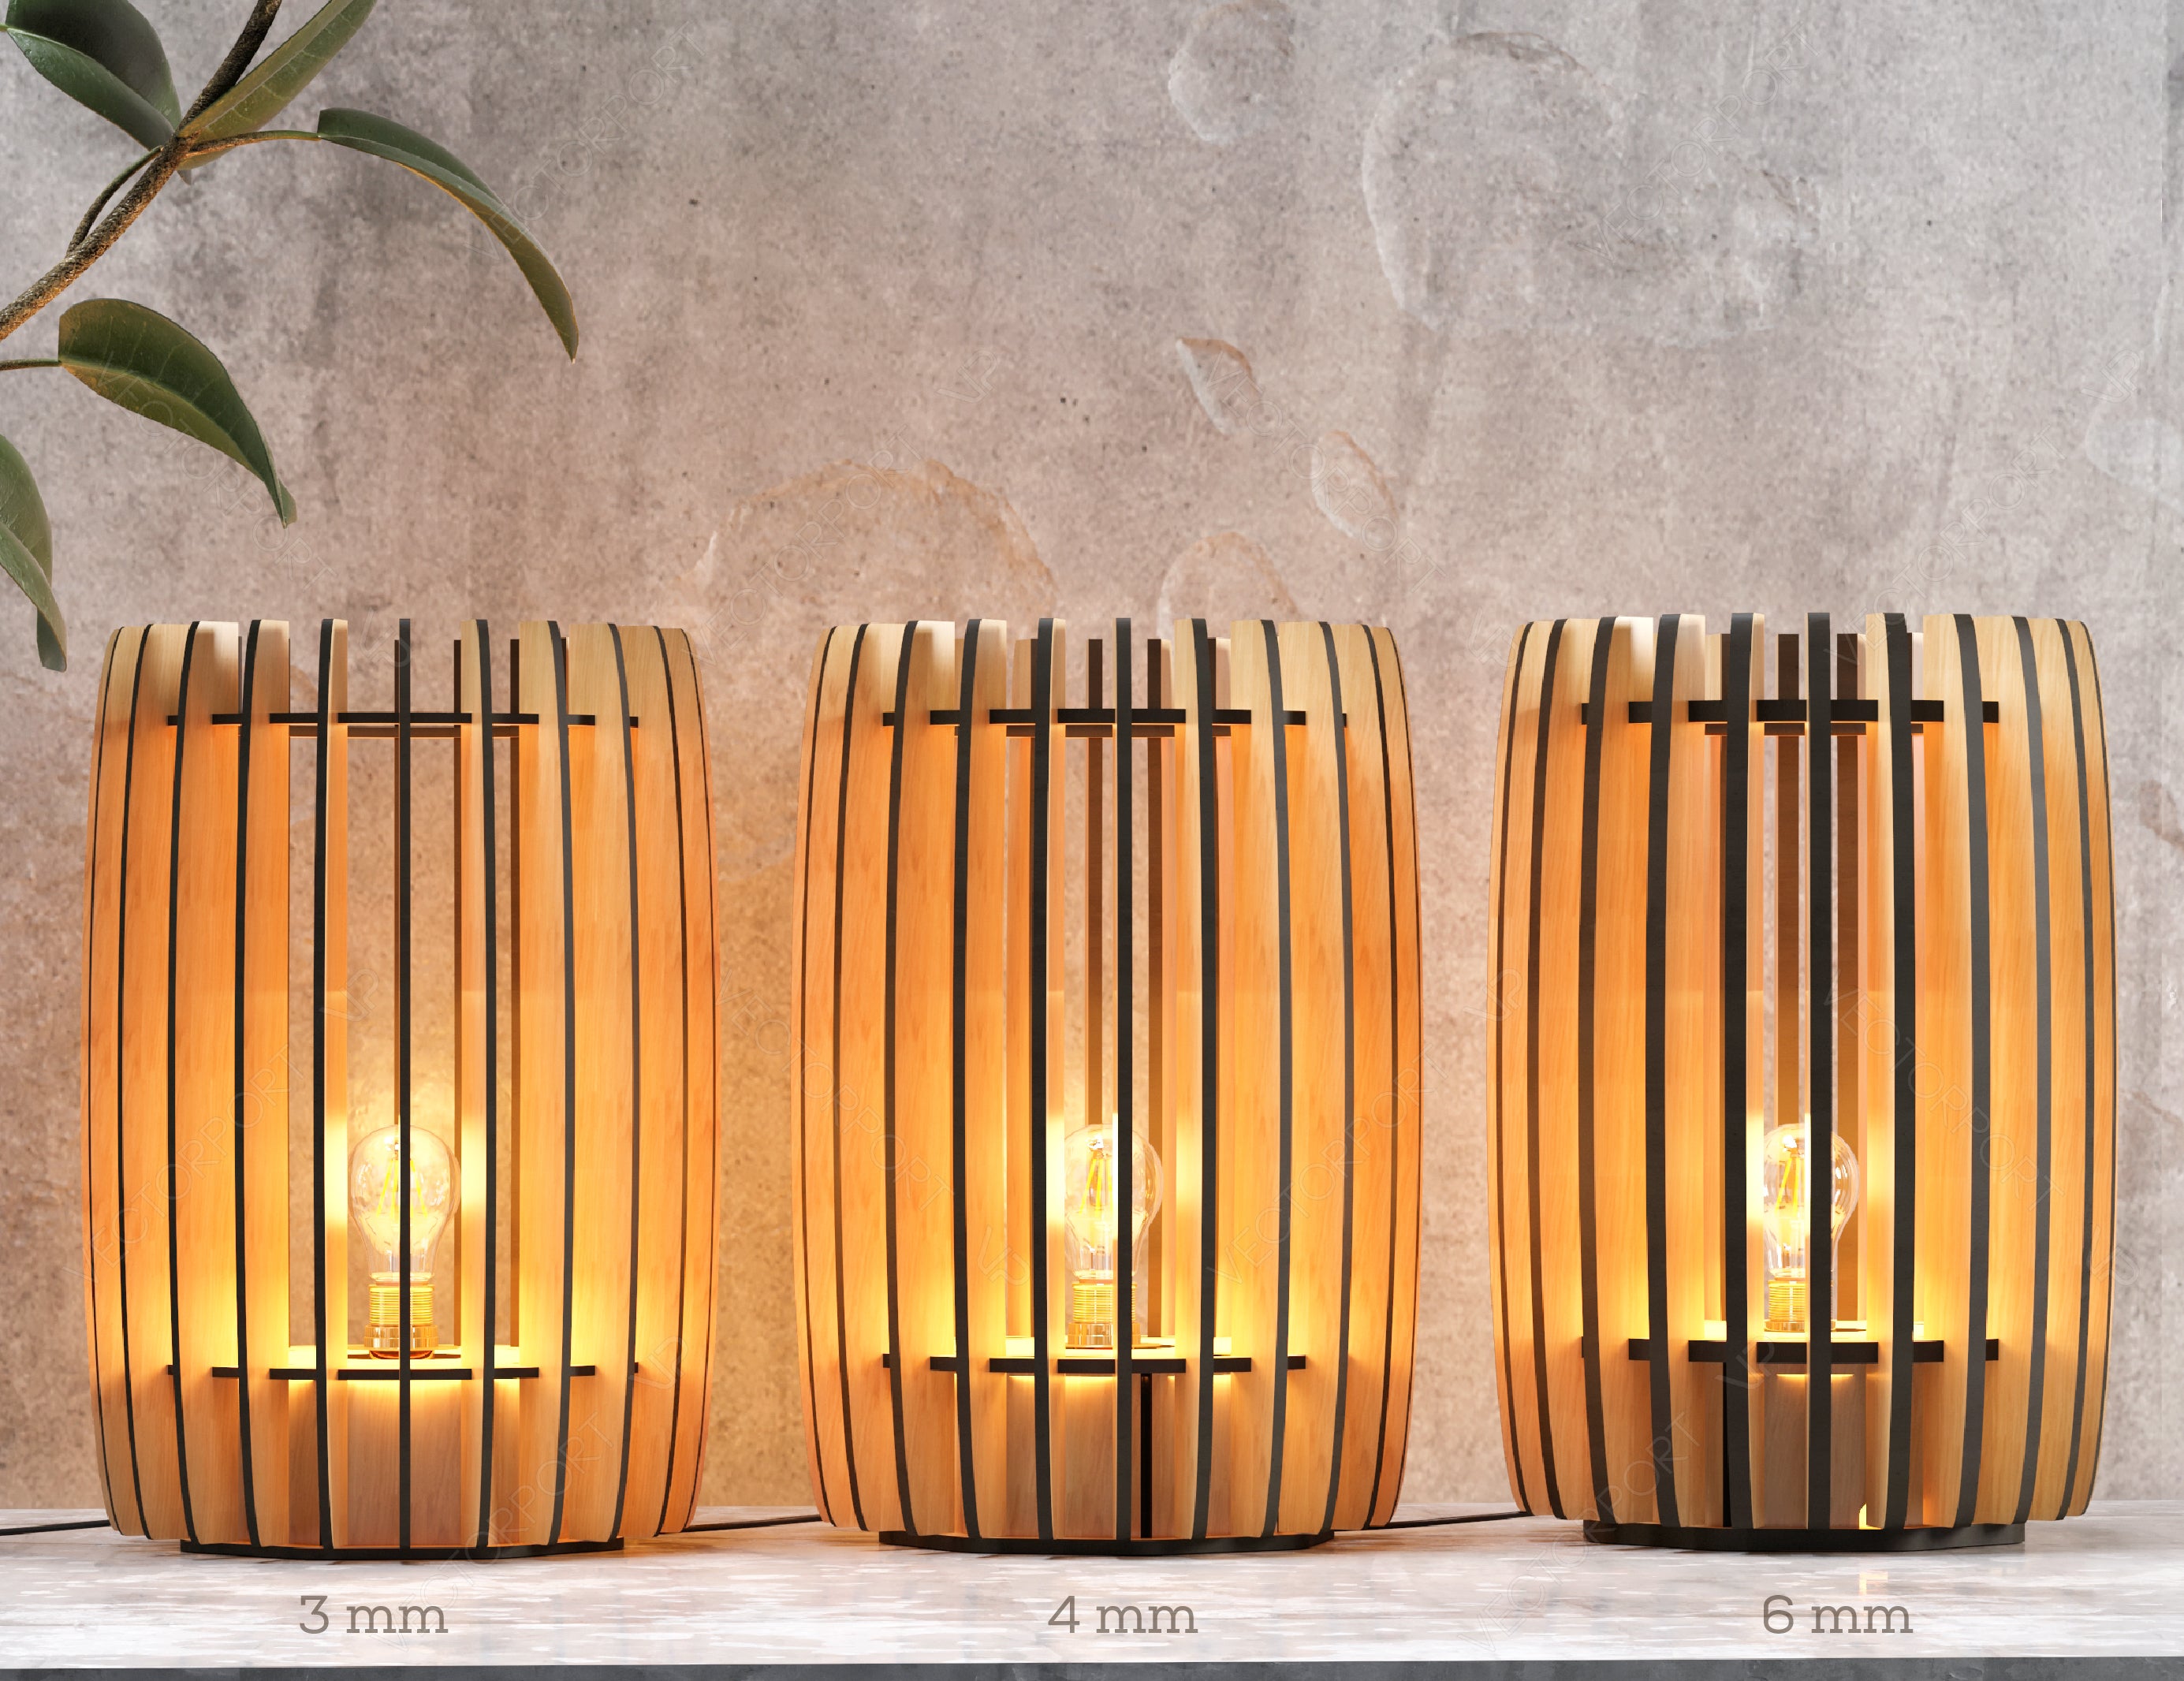 Decorative Modern Cylinder Table Wooden Lamp Laser Cut Desk Lamp Vector plans Digital Download SVG DXF |#198|